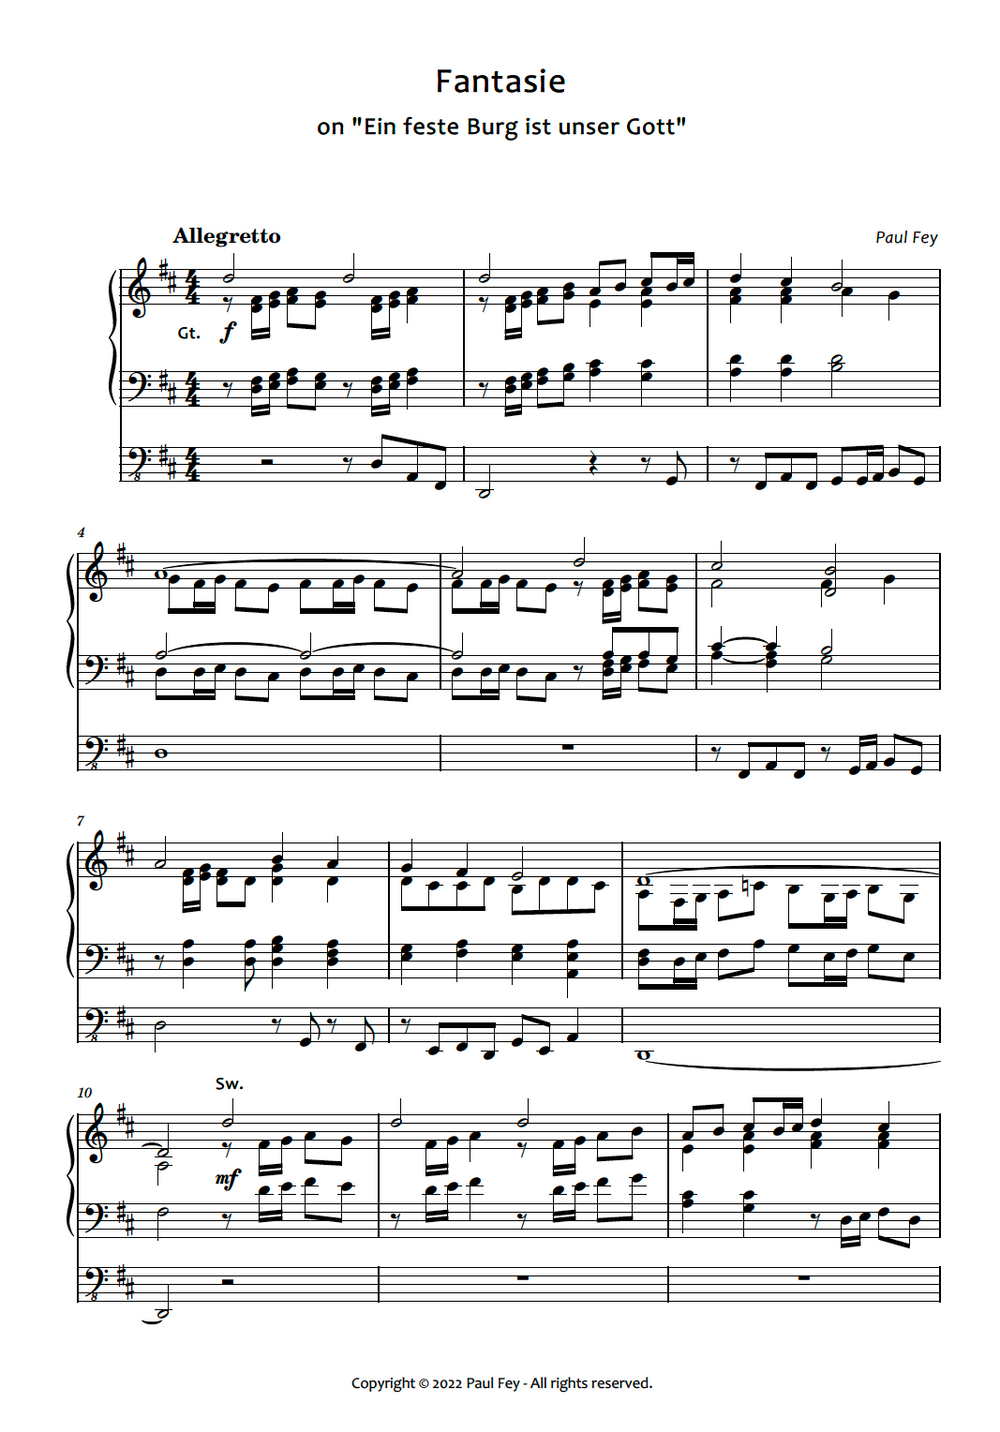 Fantasie on "Ein Feste Burg ist unser Gott" (Sheet Music) - Music for Pipe Organ by Paul Fey